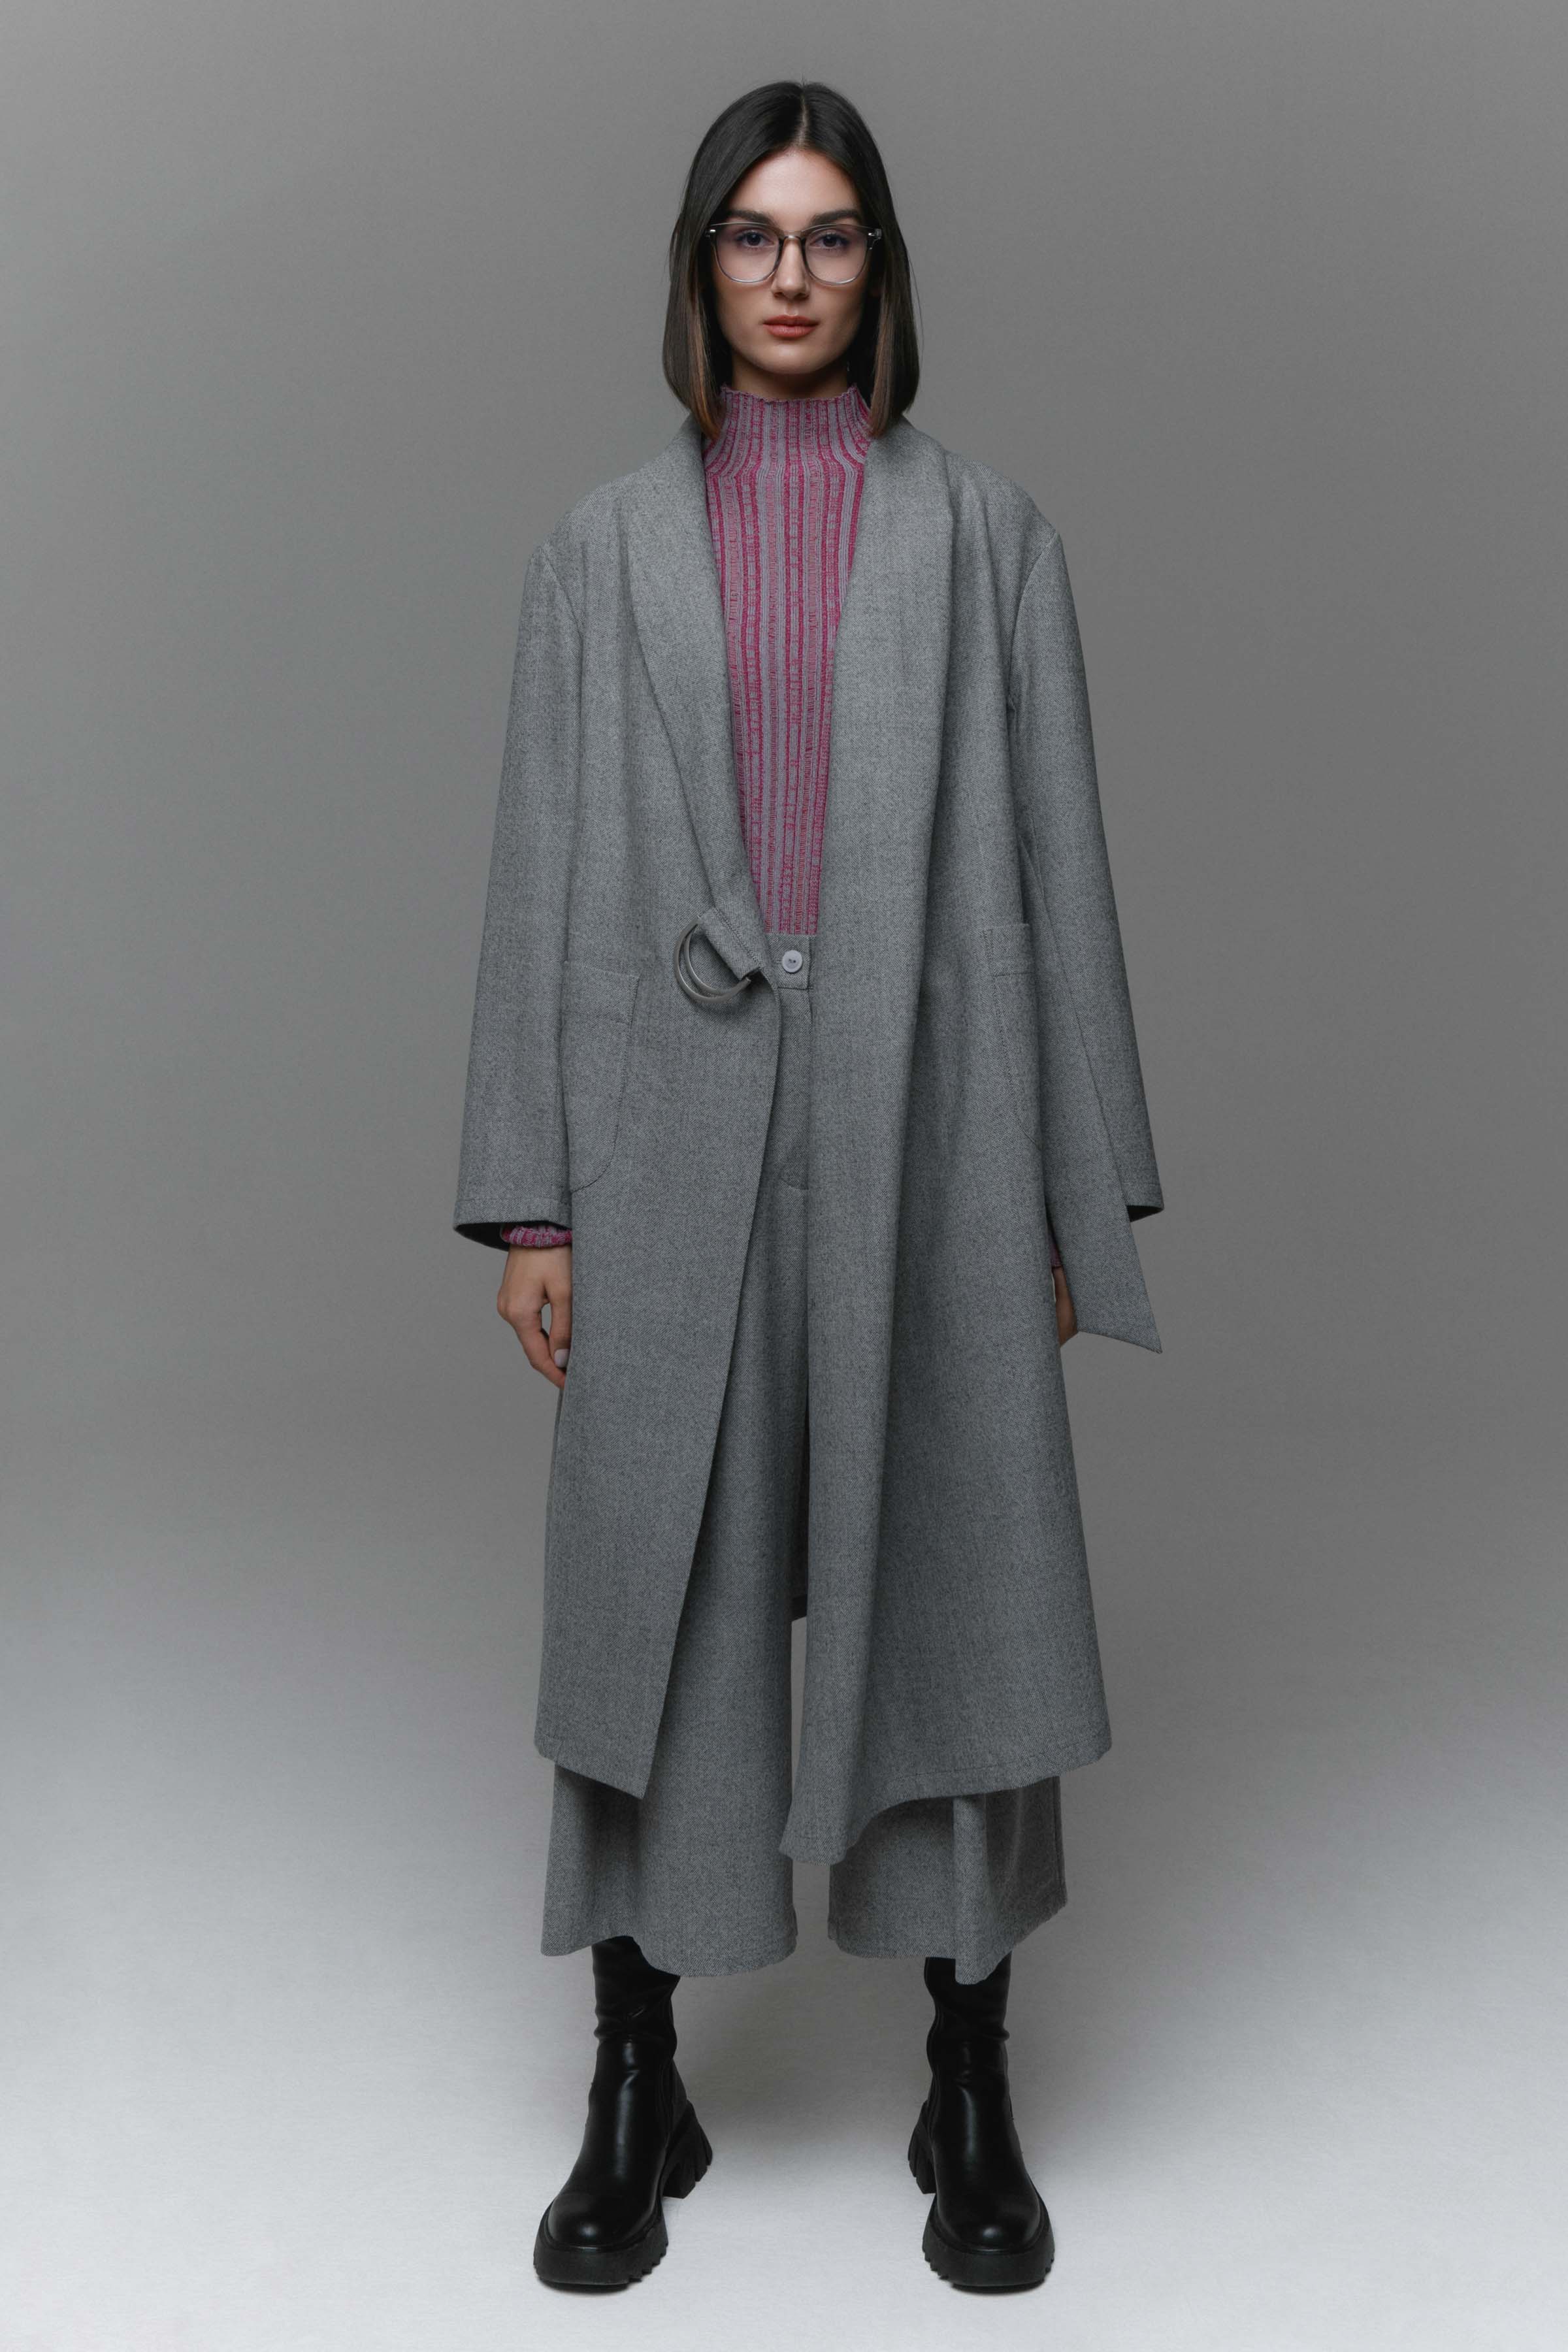 Пальто с драпировкой, твид без подкладки 15 Серый меланж (melange gris) от Lesel (Лесель)! Заказывайте по ✆ 8 (800) 777 02 37